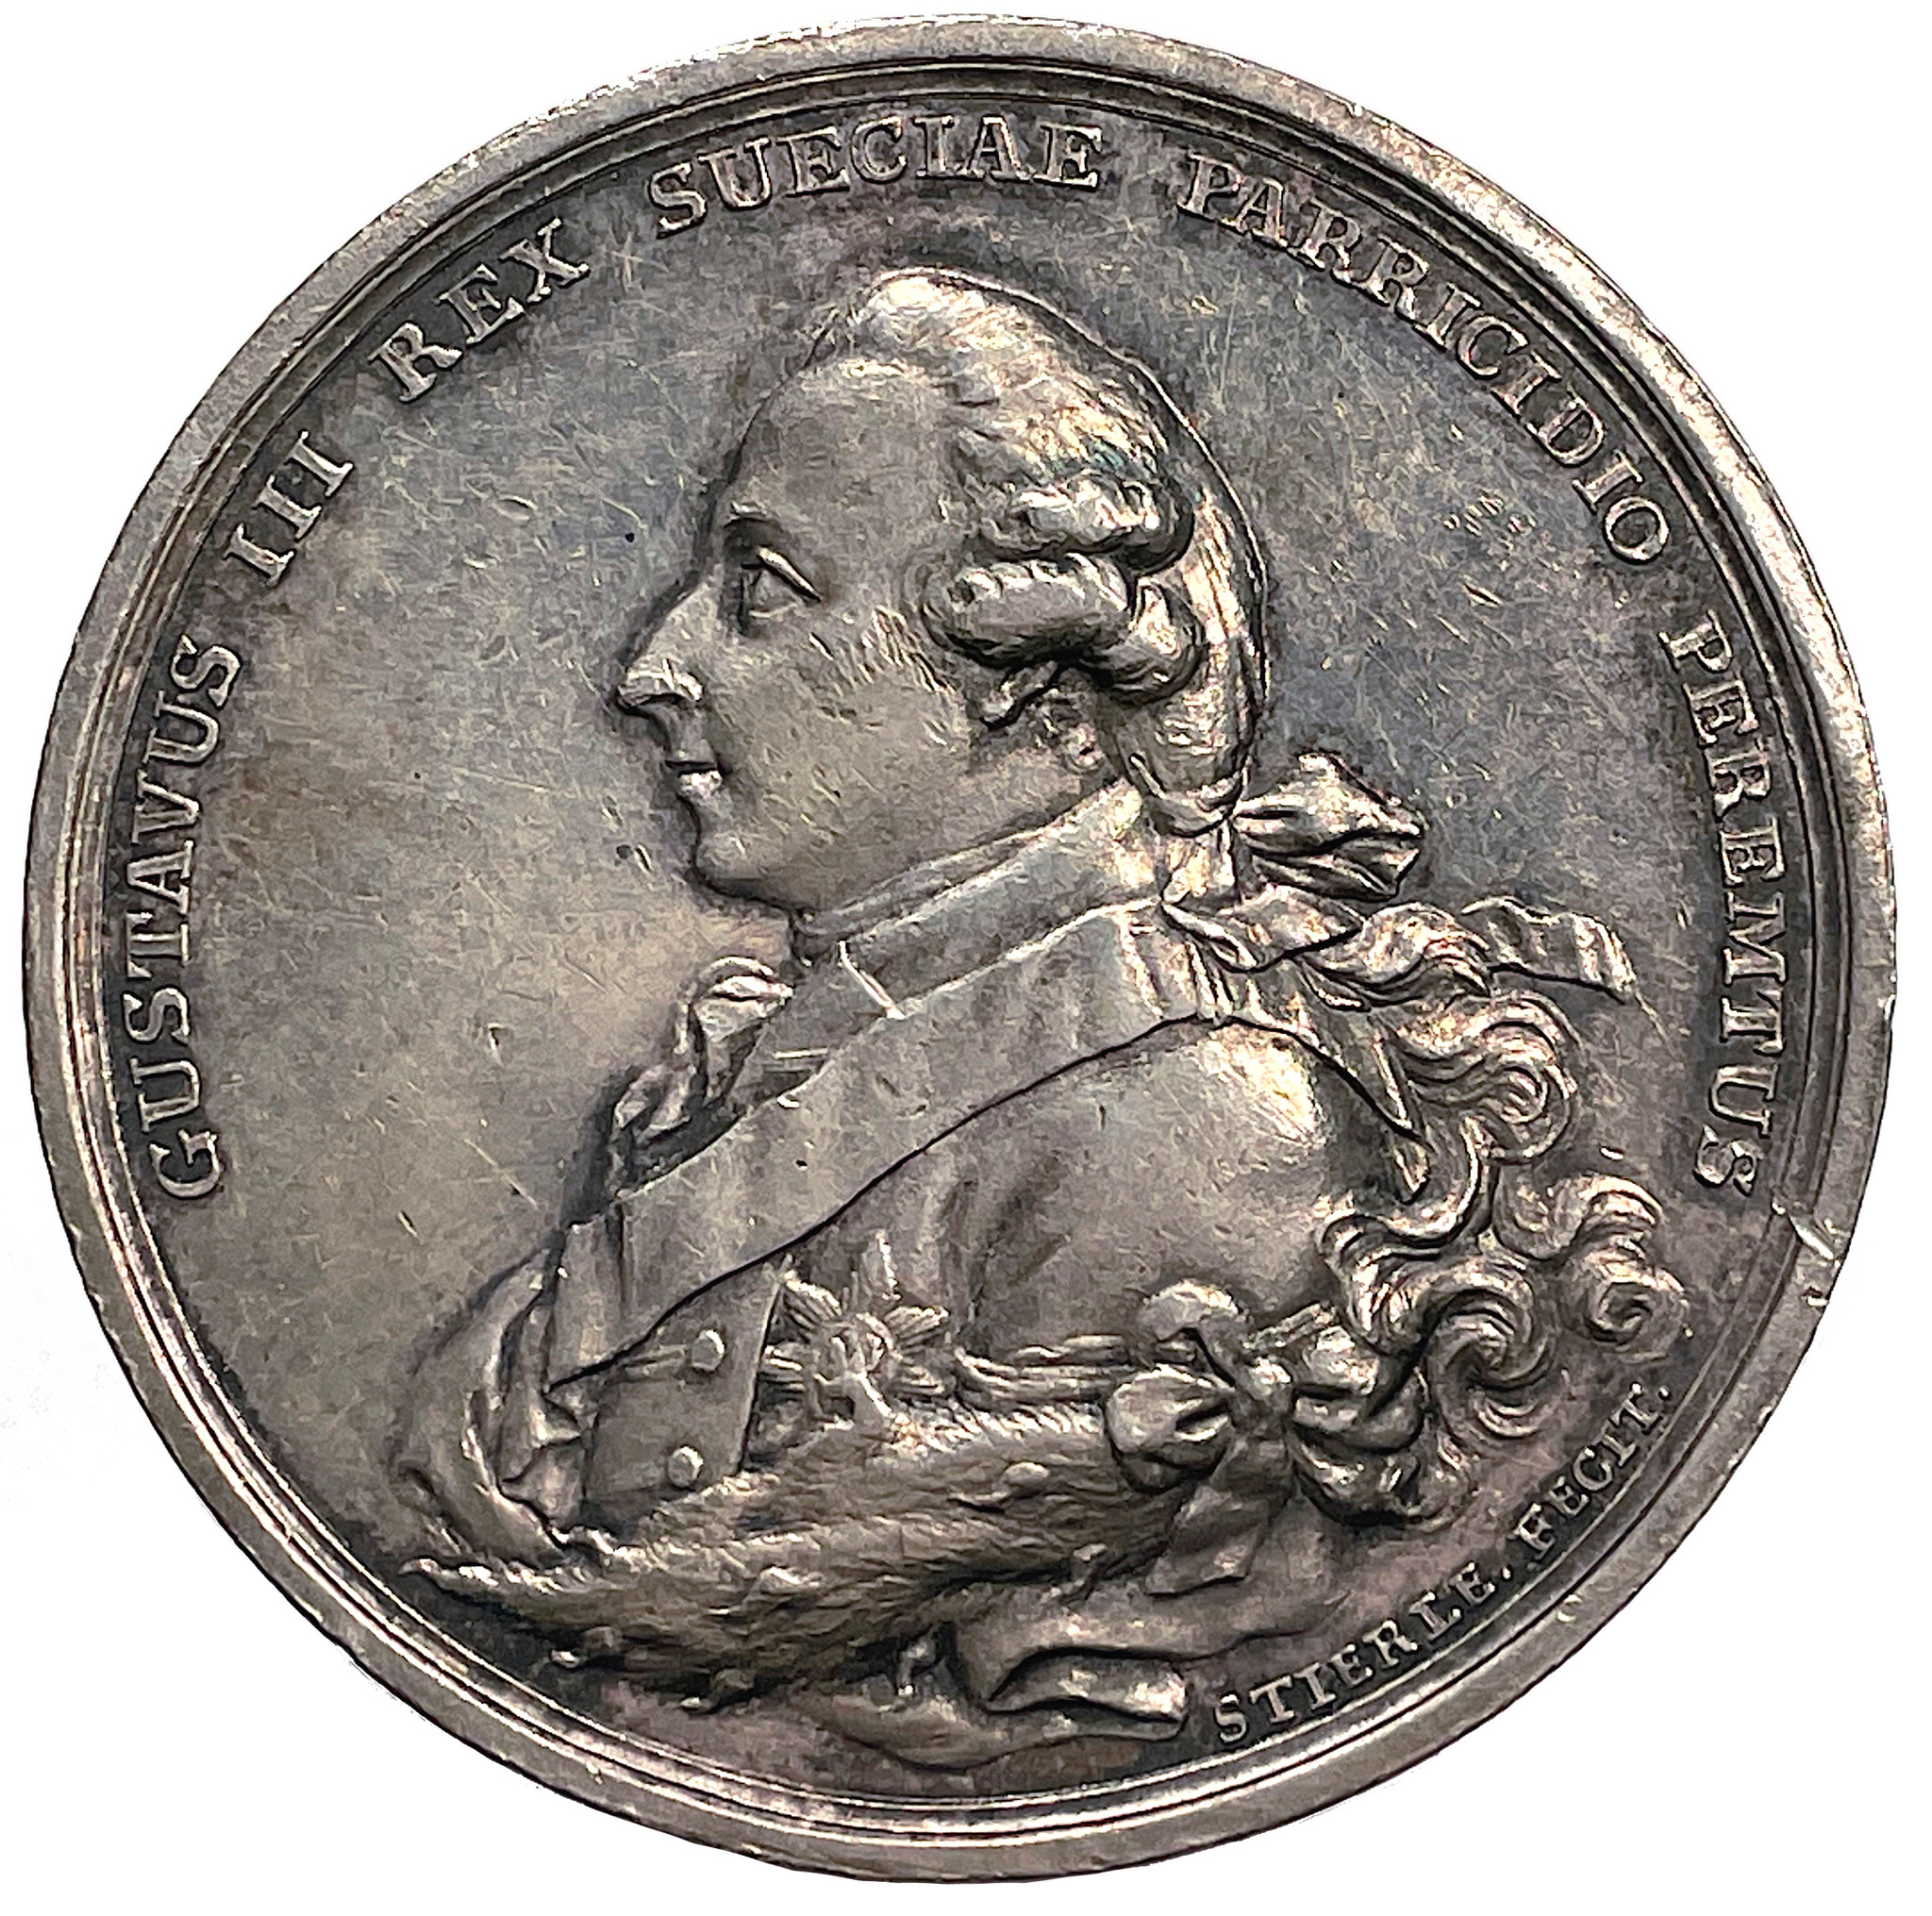 Gustav III:s död den 29 mars och begravning i Riddarholmskyrkan den 14 maj 1792 av Johann Gottfried Stierle